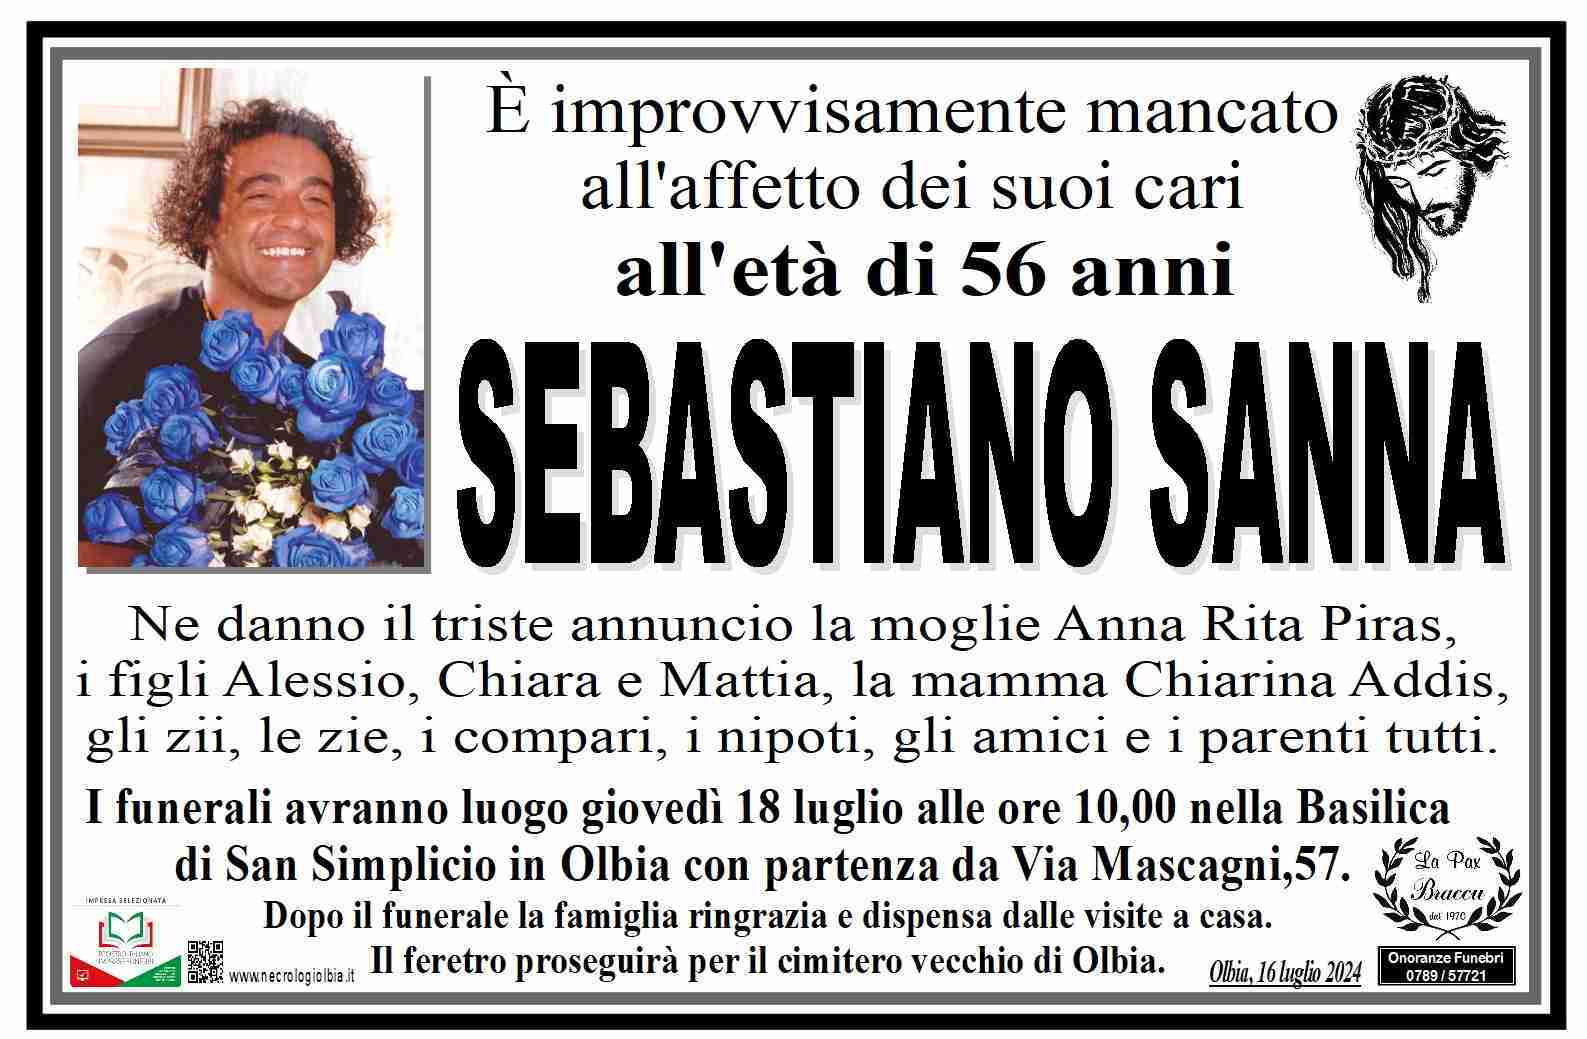 Sebastiano Sanna